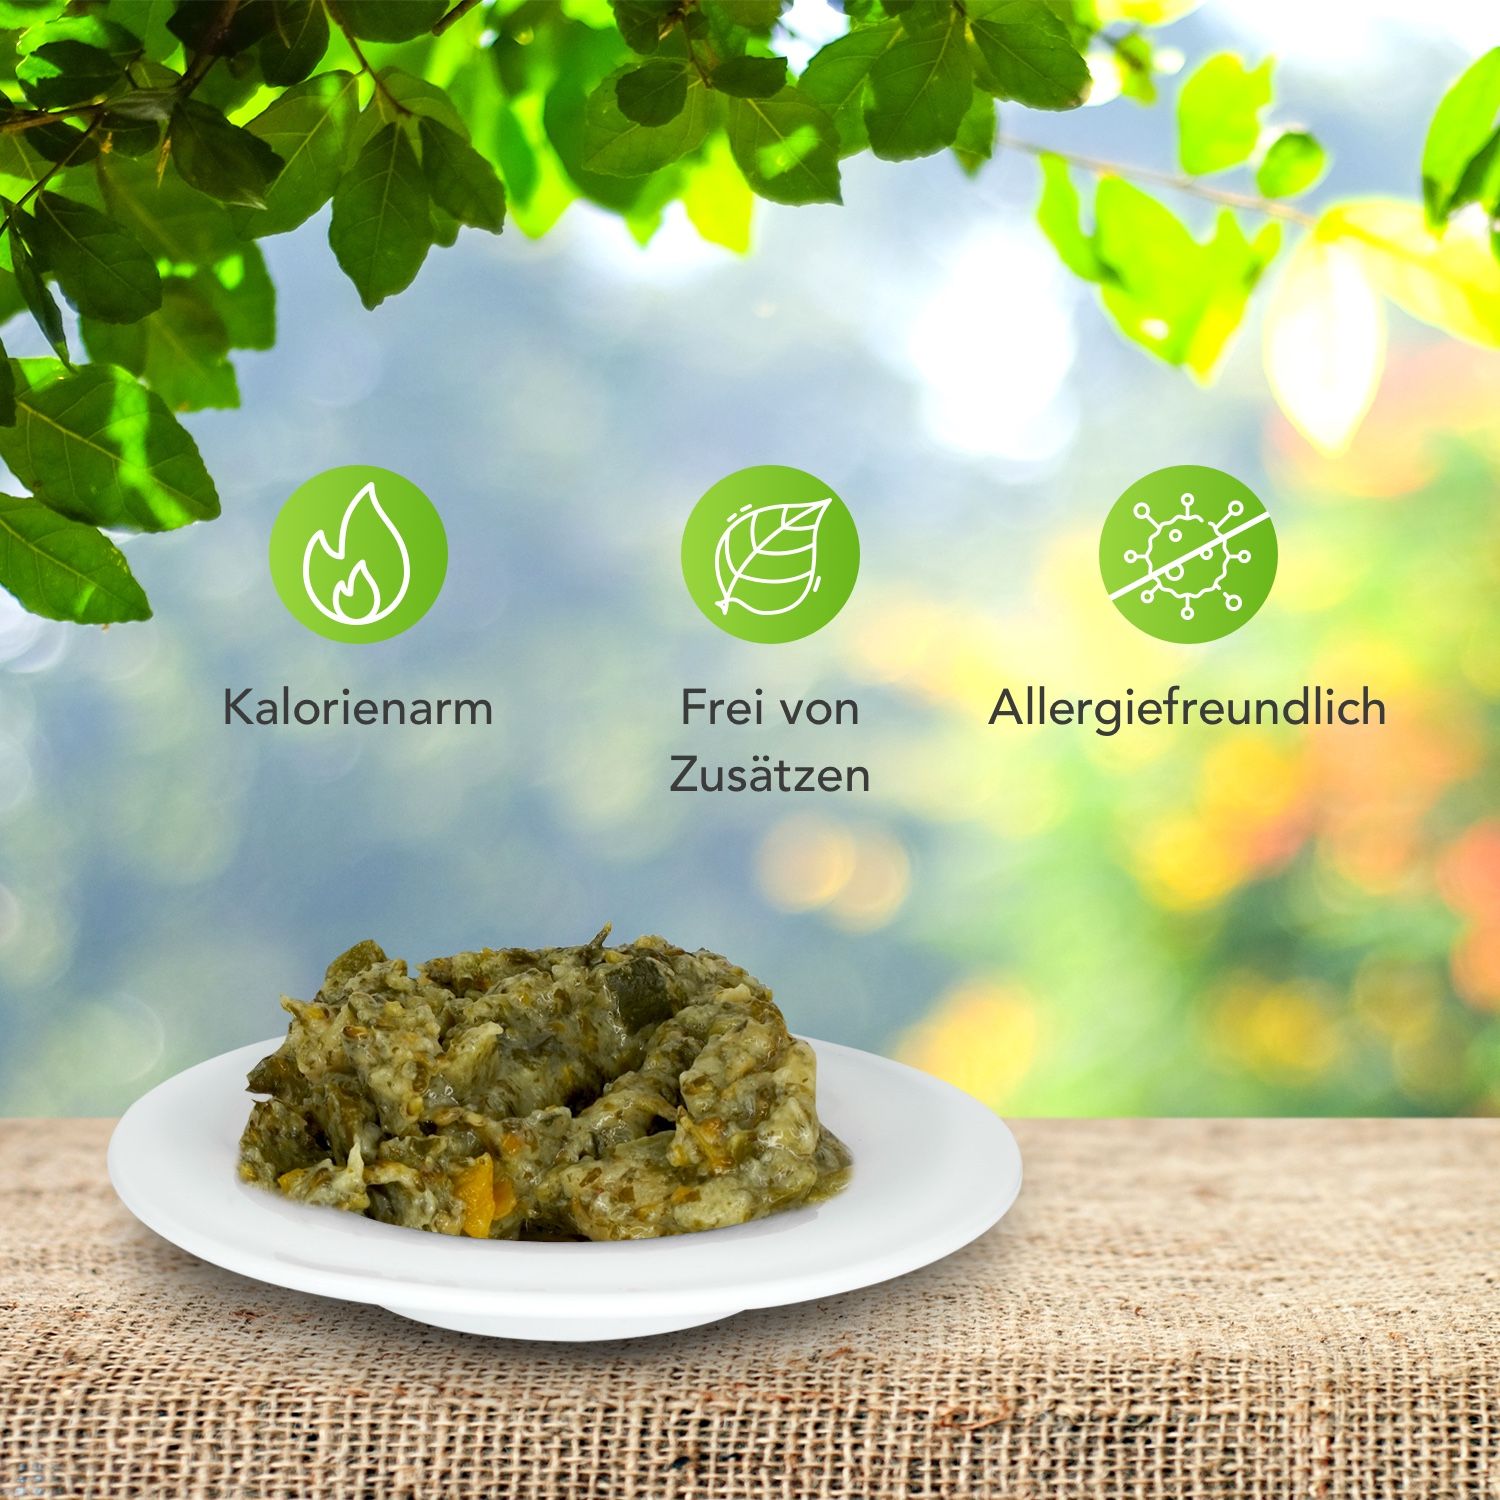 Schecker Nassfutter - 100% Gemüse PUR - grün - getreidefrei - kalorierenarm - Diätfutter